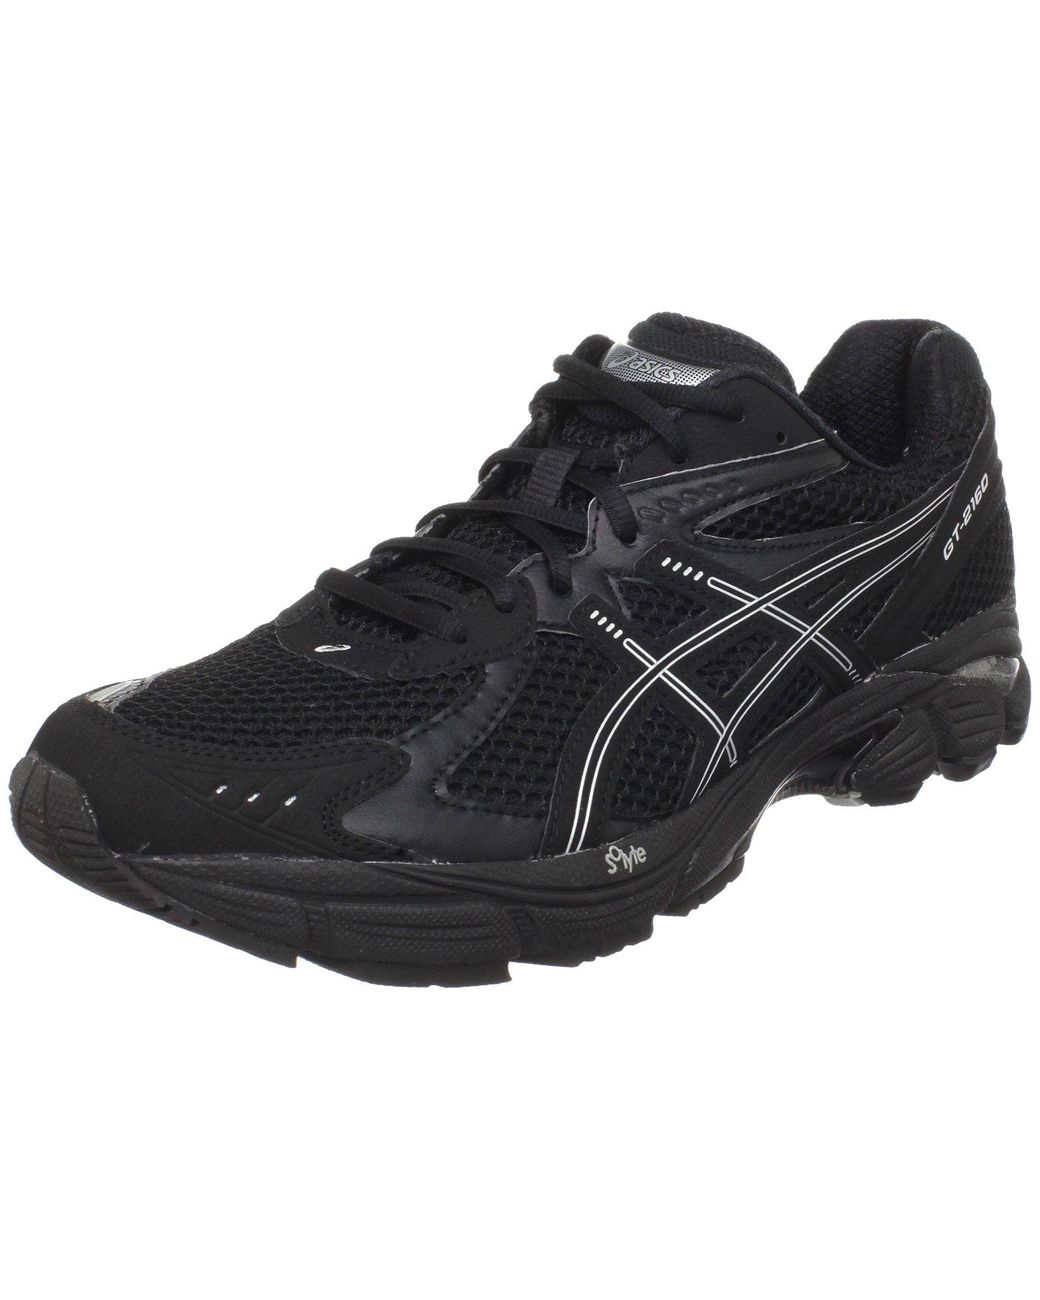 Asics Gt 2160 Running Shoe,black/onyx/lightning,7 B for Men - Save 7% - Lyst